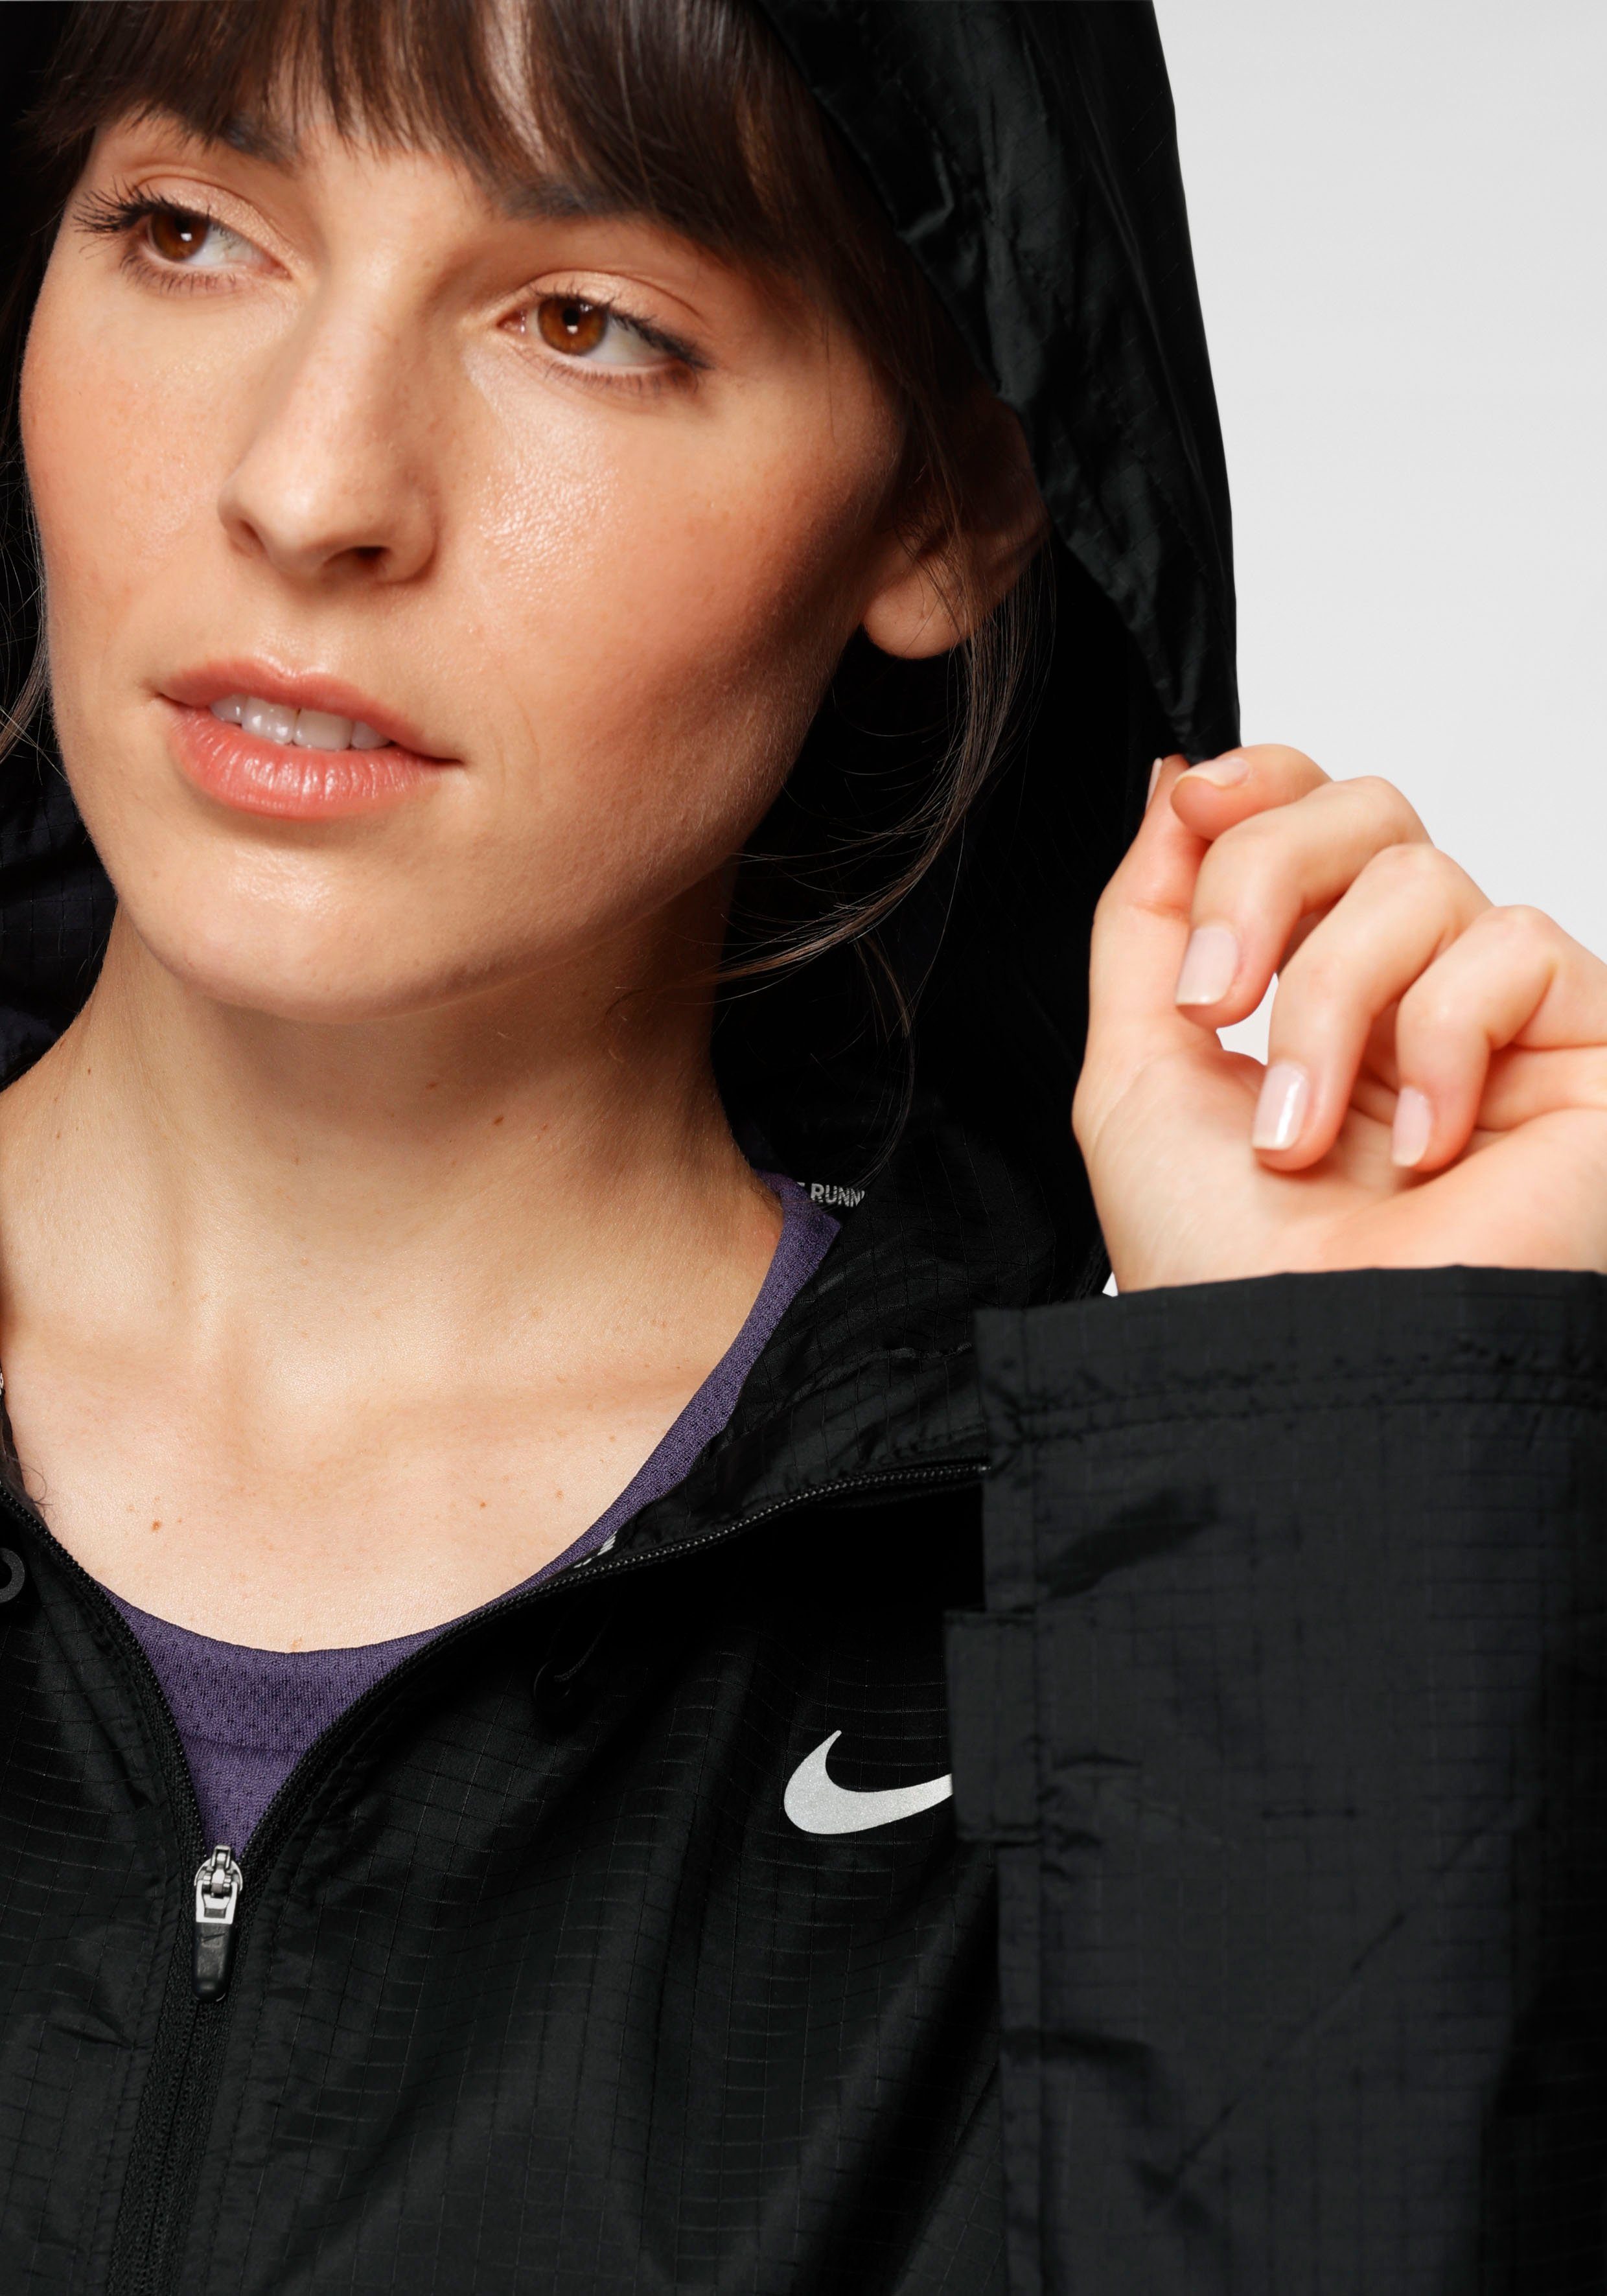 Women's Jacket Nike Essential Laufjacke Running schwarz